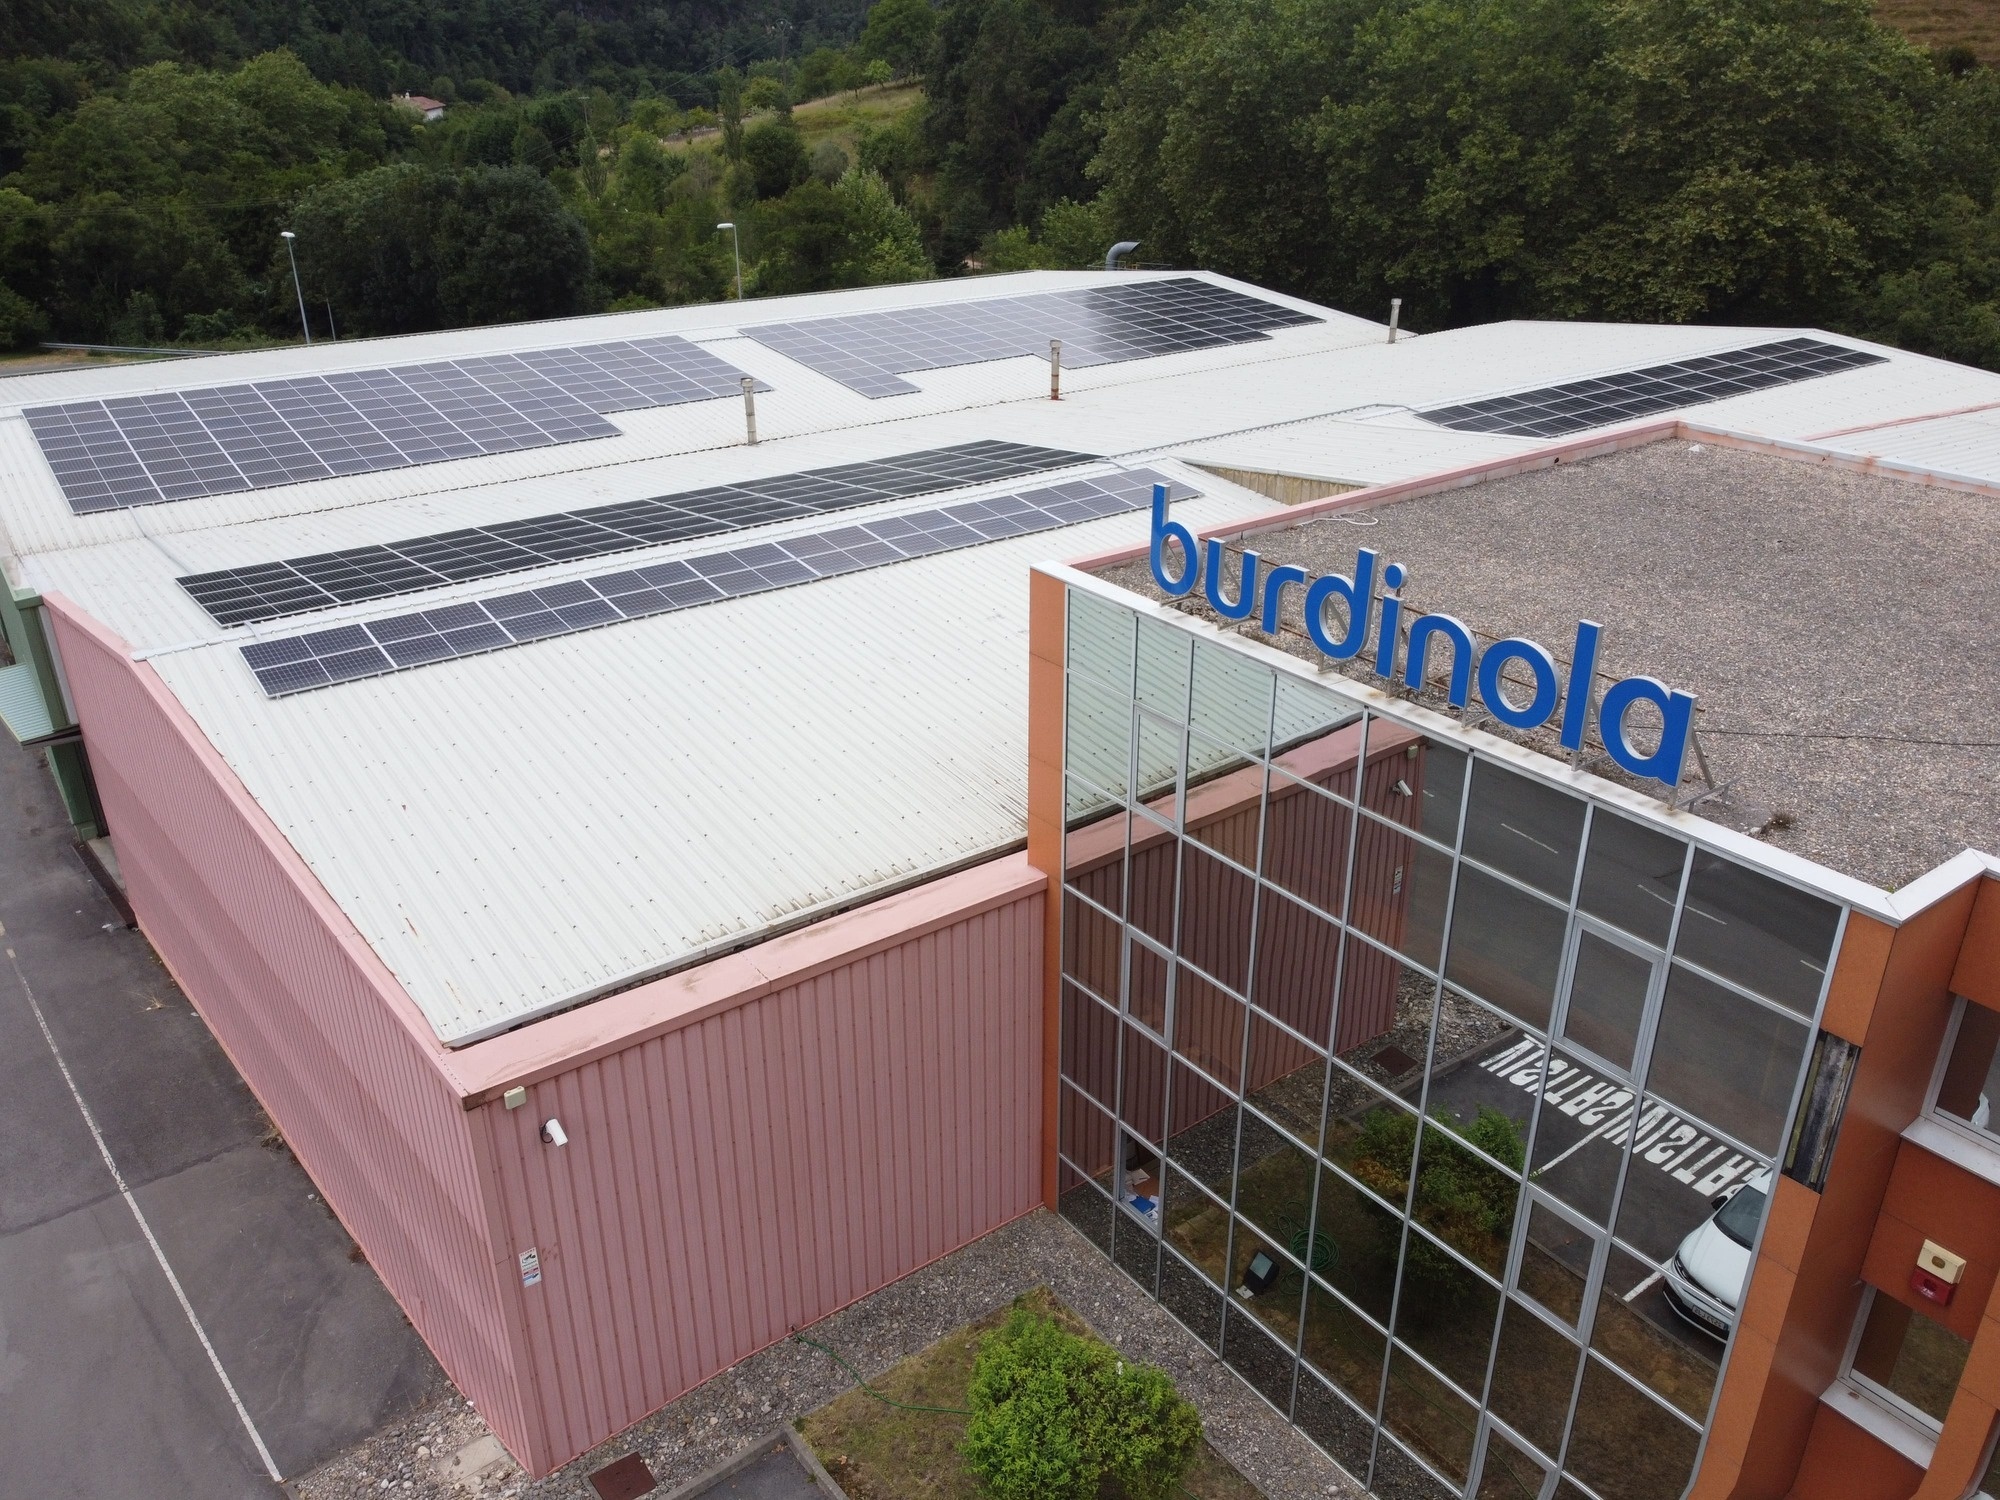 Burdinola_Photovoltaic self consumption